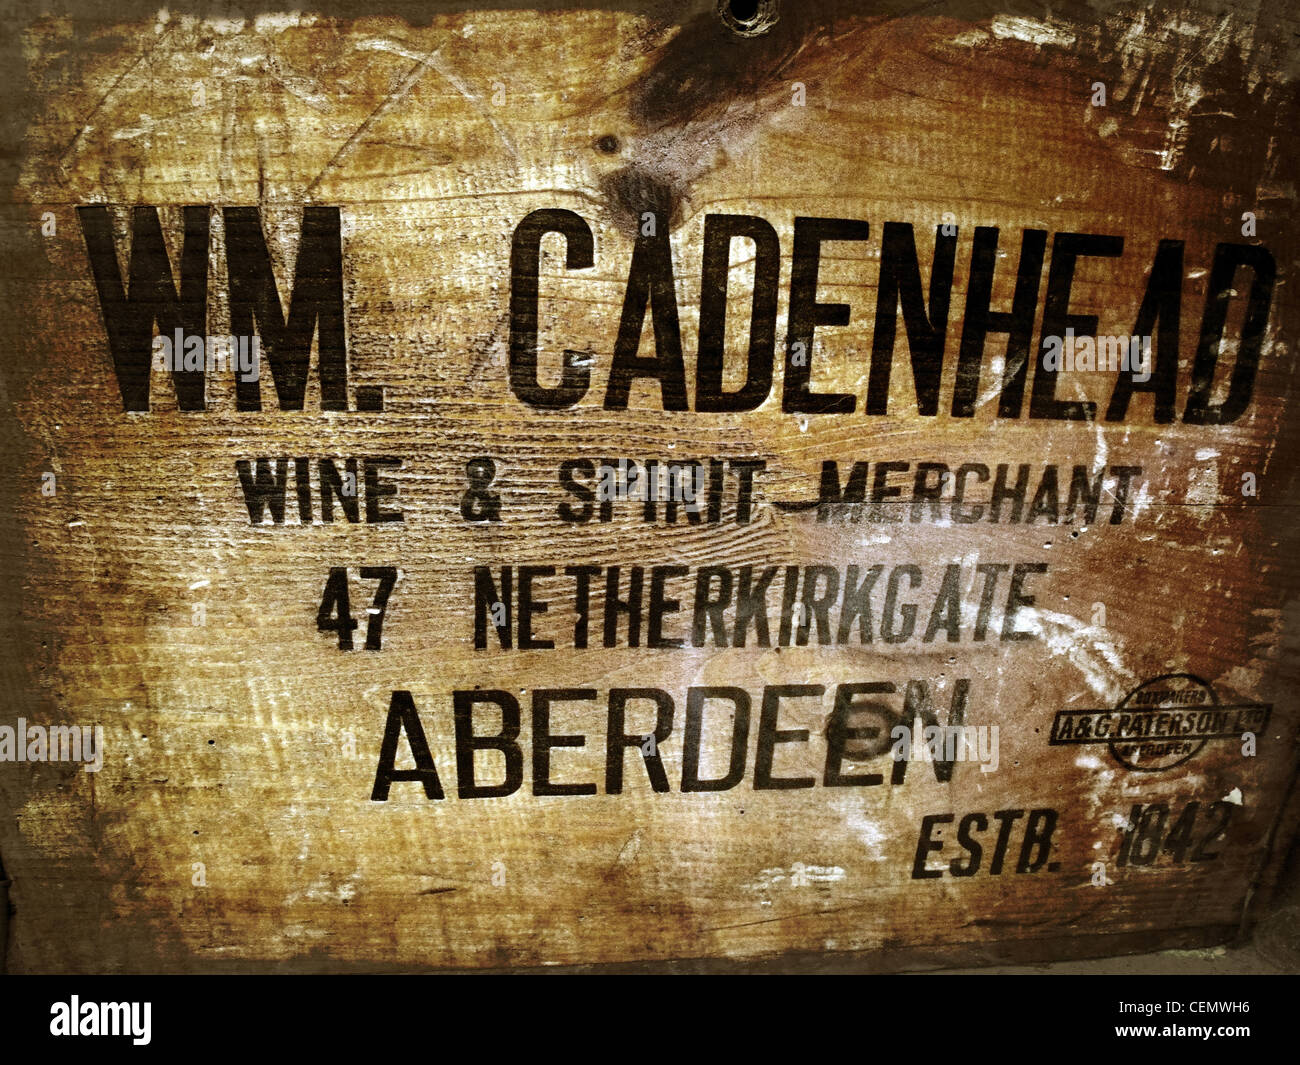 WM Cadenhead, Scots Scottish Whisky Spirit wooden case Aberdeen Wine & Spirit Merchant 47 Netherkirkgate Aberdeen NE Scotland Stock Photo